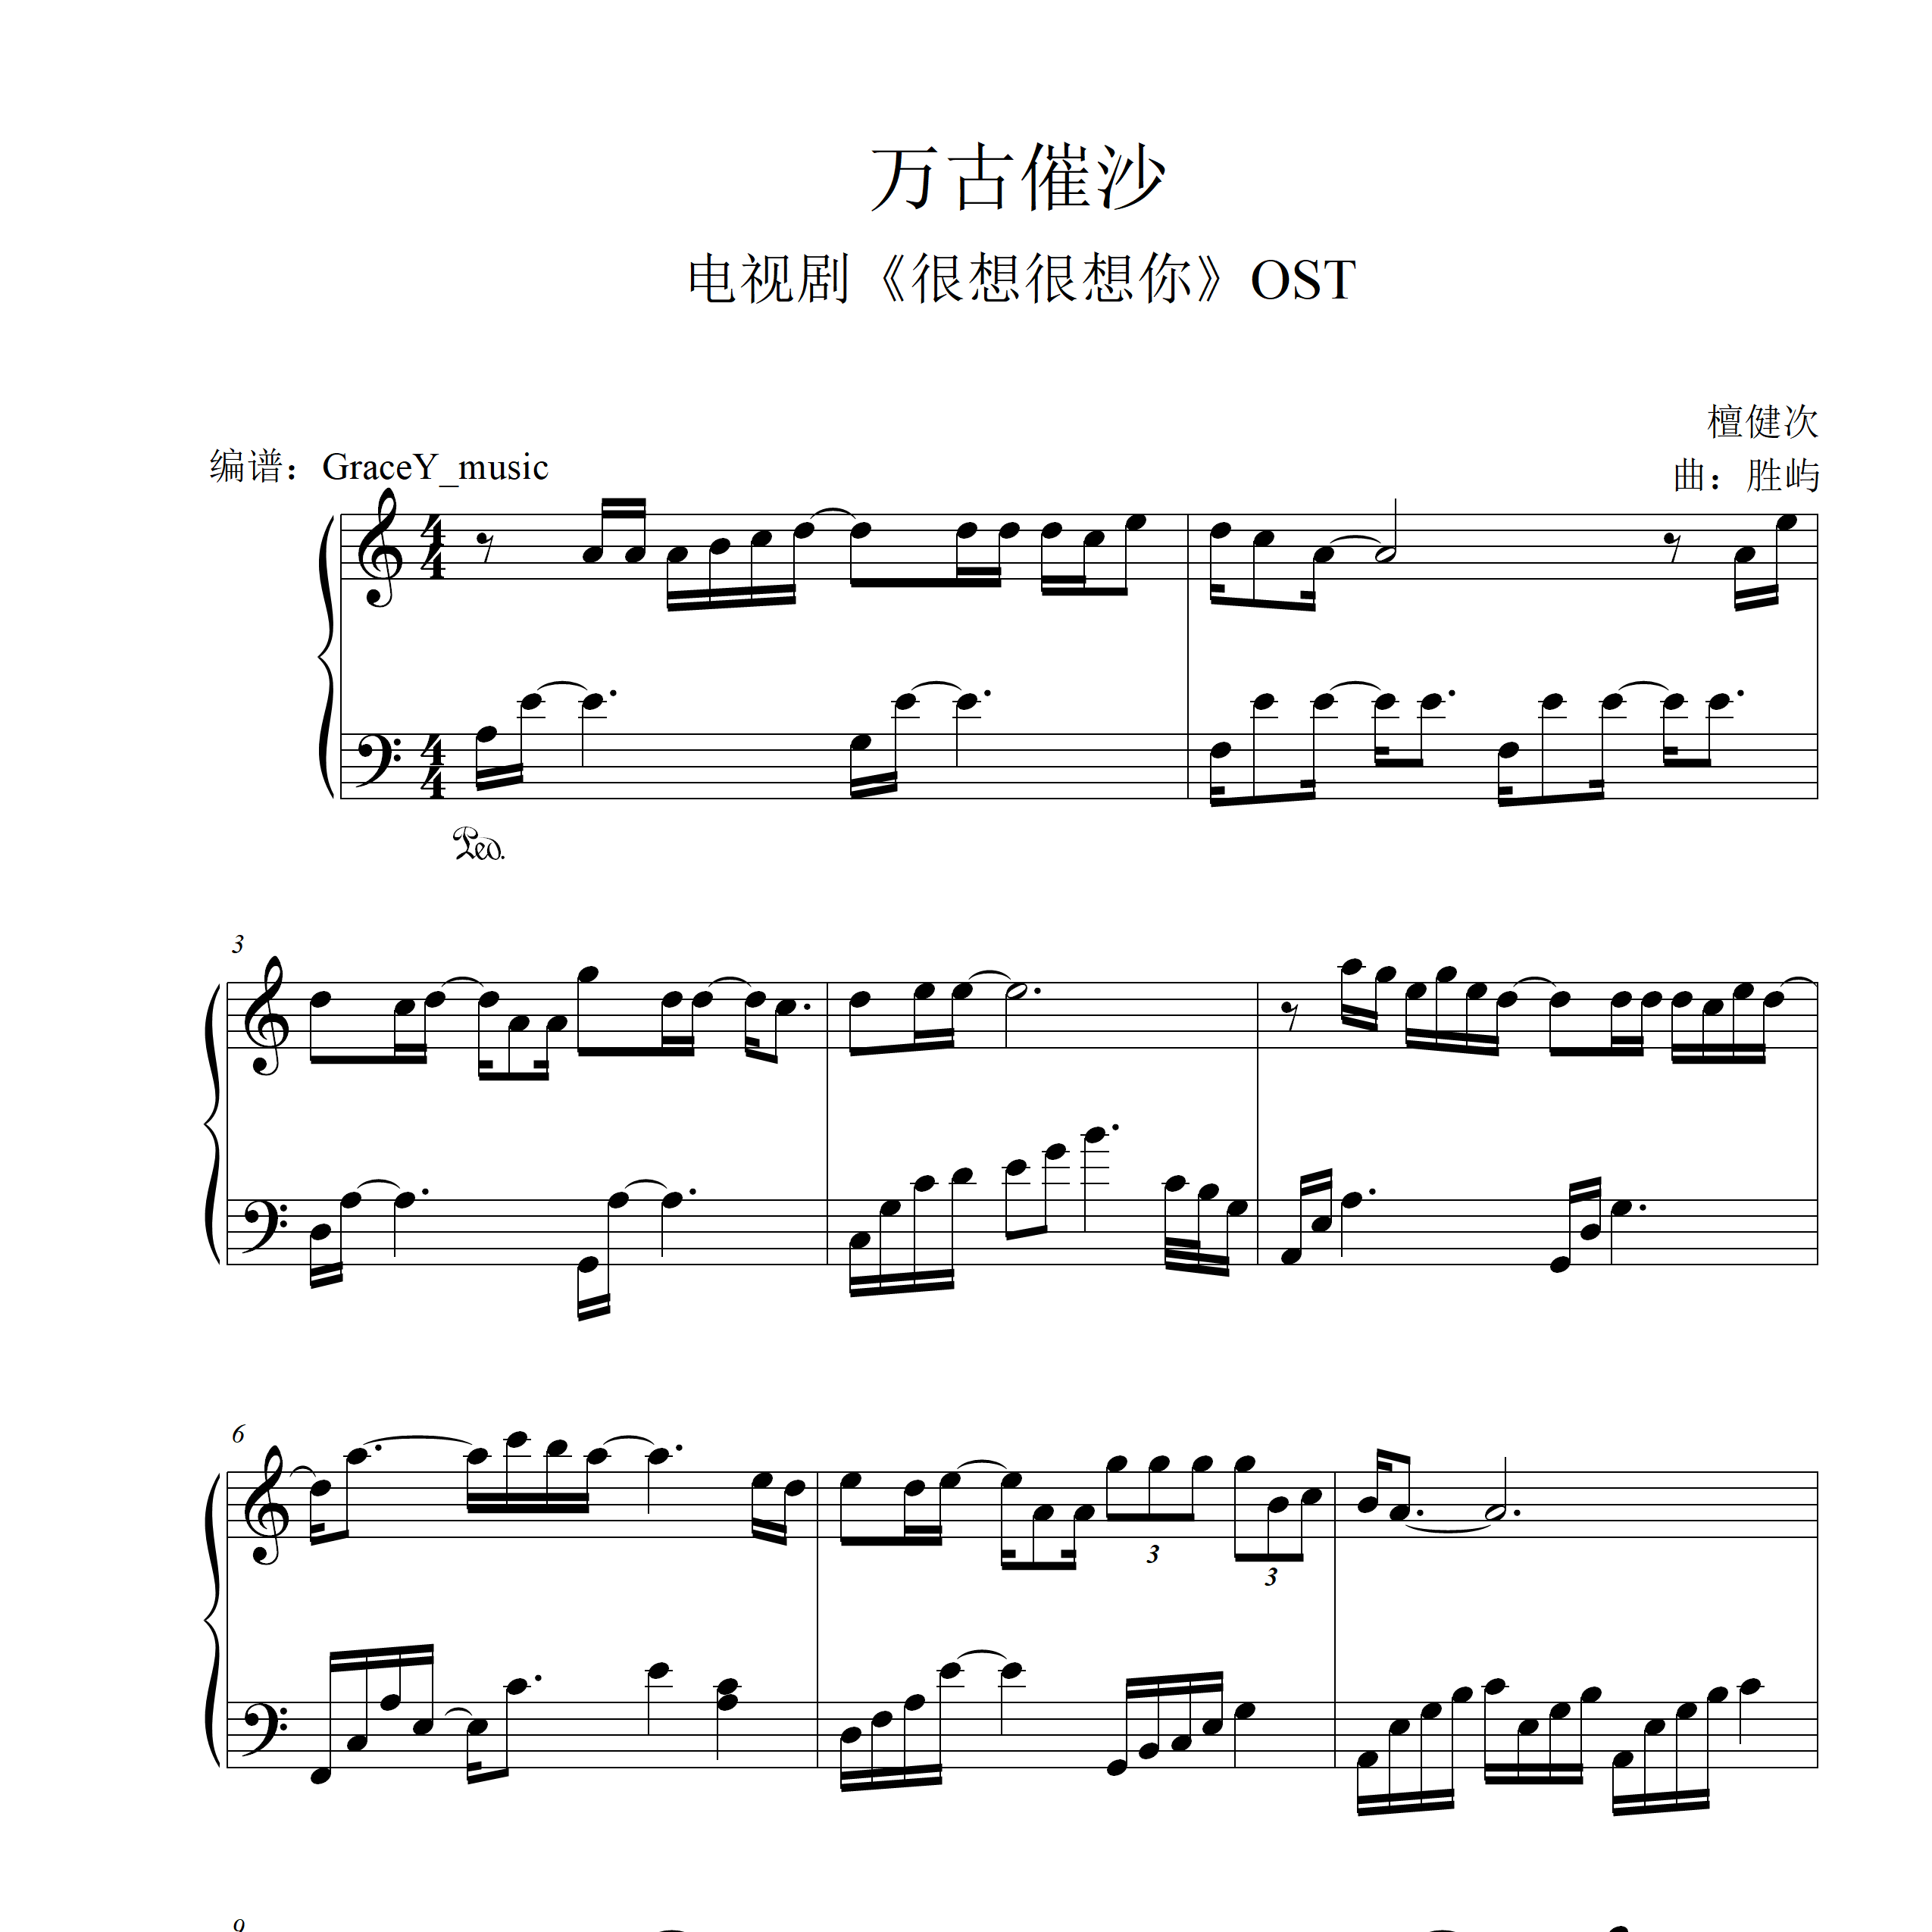 《万古催沙》-电视剧《很想很想你》OST钢琴谱